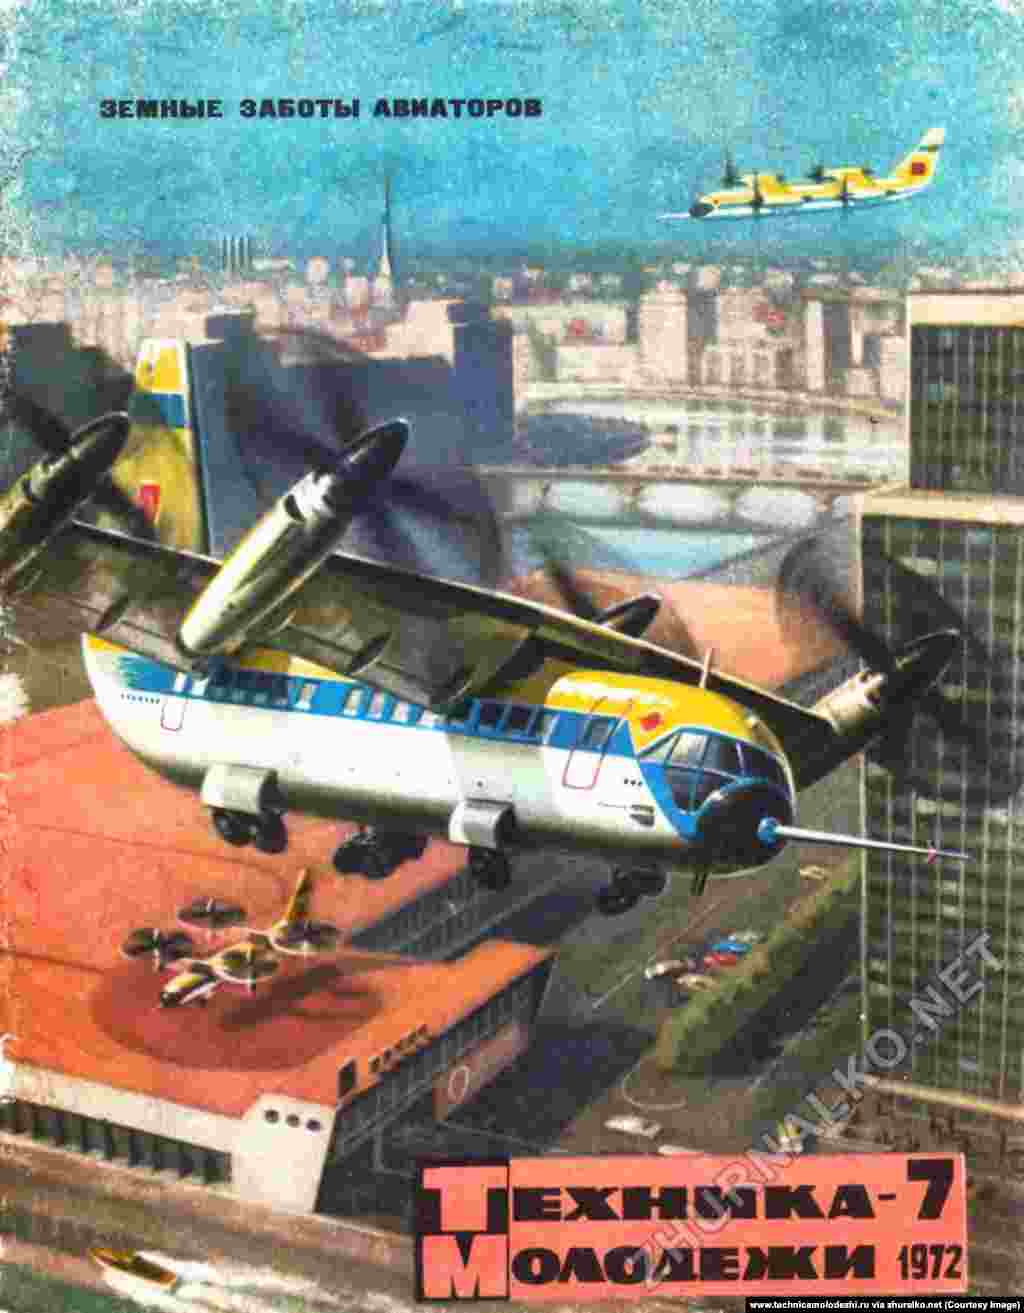 Letjelica koja vertikalno uzlijeće i slijeće, skicirana 17 godina prije nego je letjelica Bell Boeing Osprey u SAD-u poletjela.